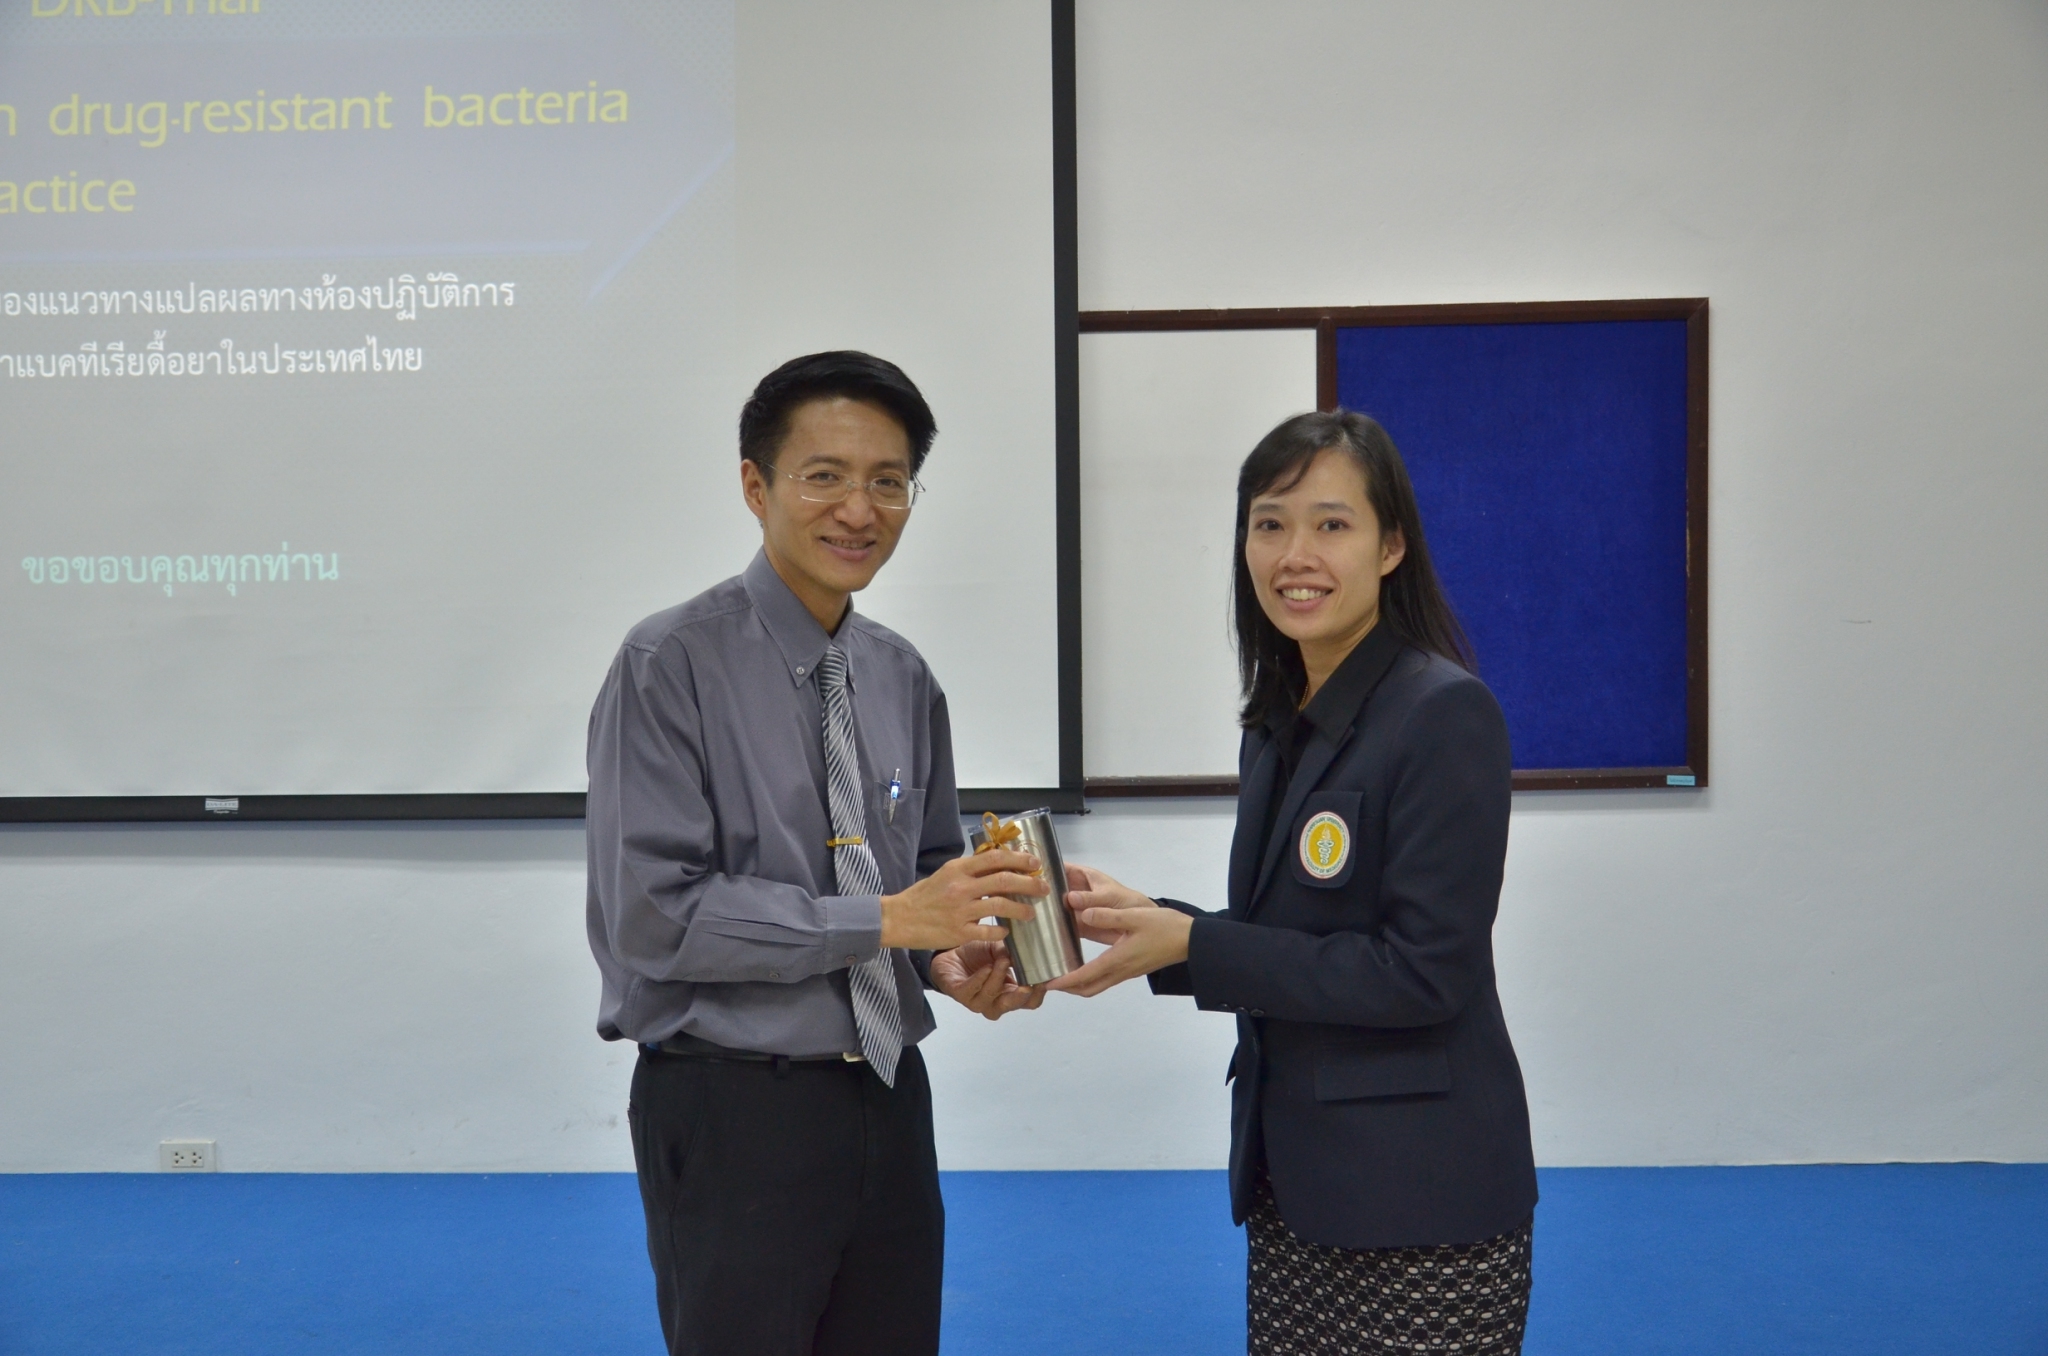 ประชุมวิชาการเครือข่ายเฝ้าระวังและศึกษาระดับโมเลกุลของแบคทีเรียดื้อยาในประเทศไทย ครั้งที่ 1